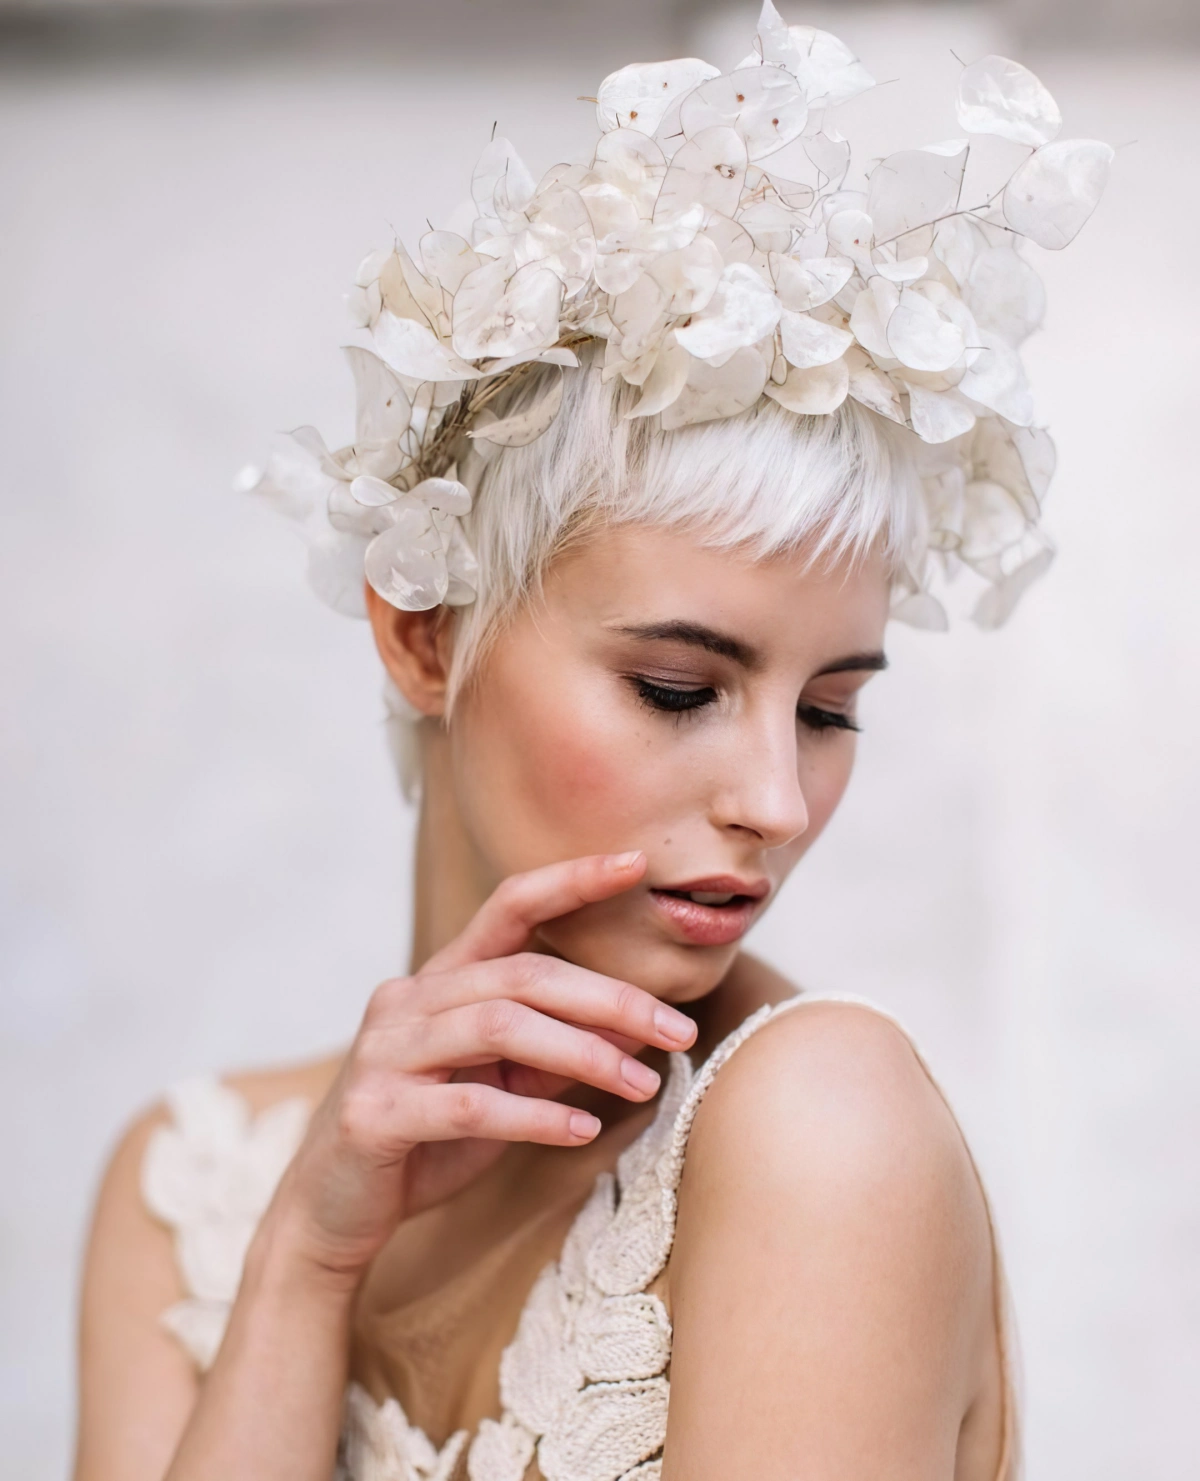 cheveux tres court lisses avec frange coloration blond polaire couronne fleurs blanches